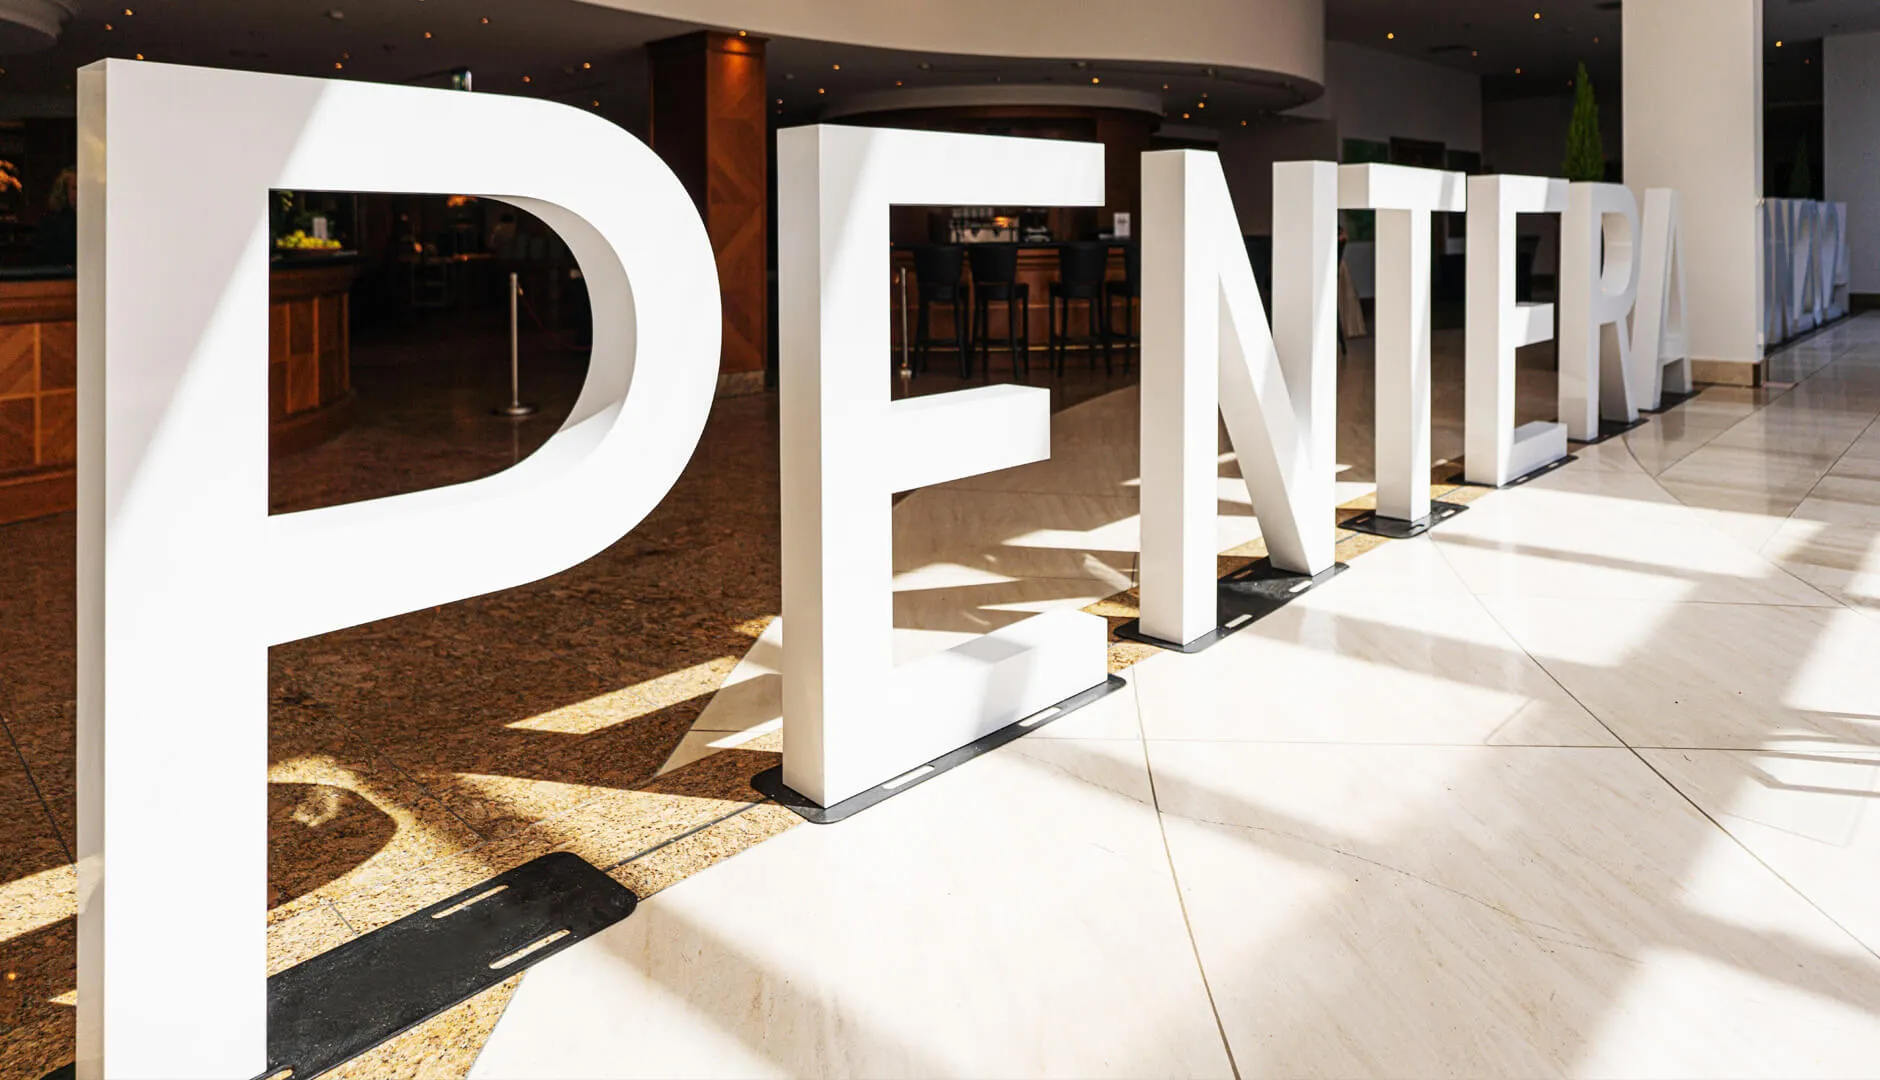 Pentera großformatige 3D-Standbuchstaben